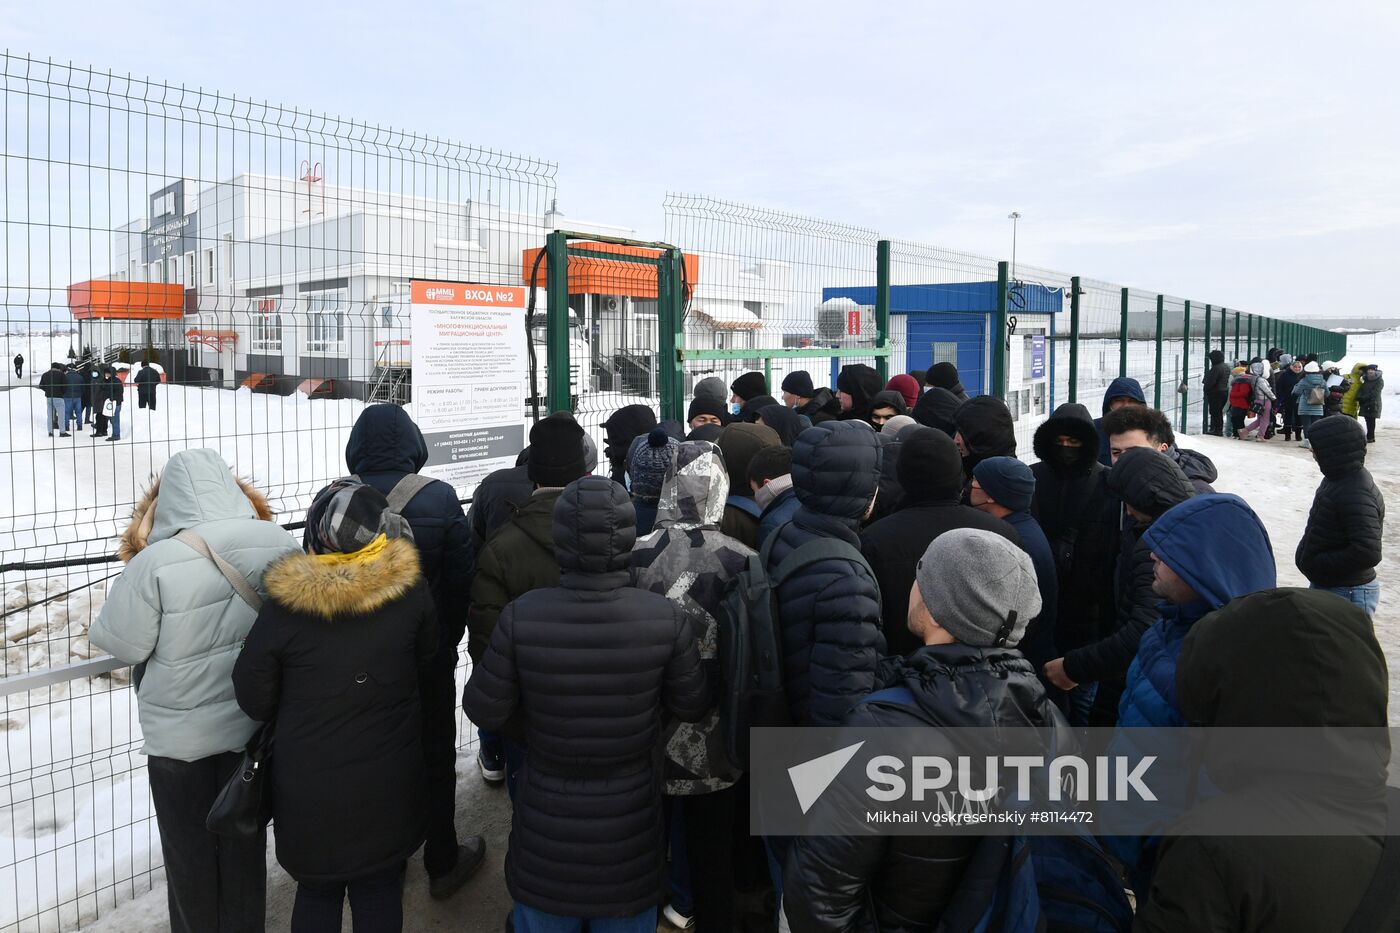 Russia Labour Migrants